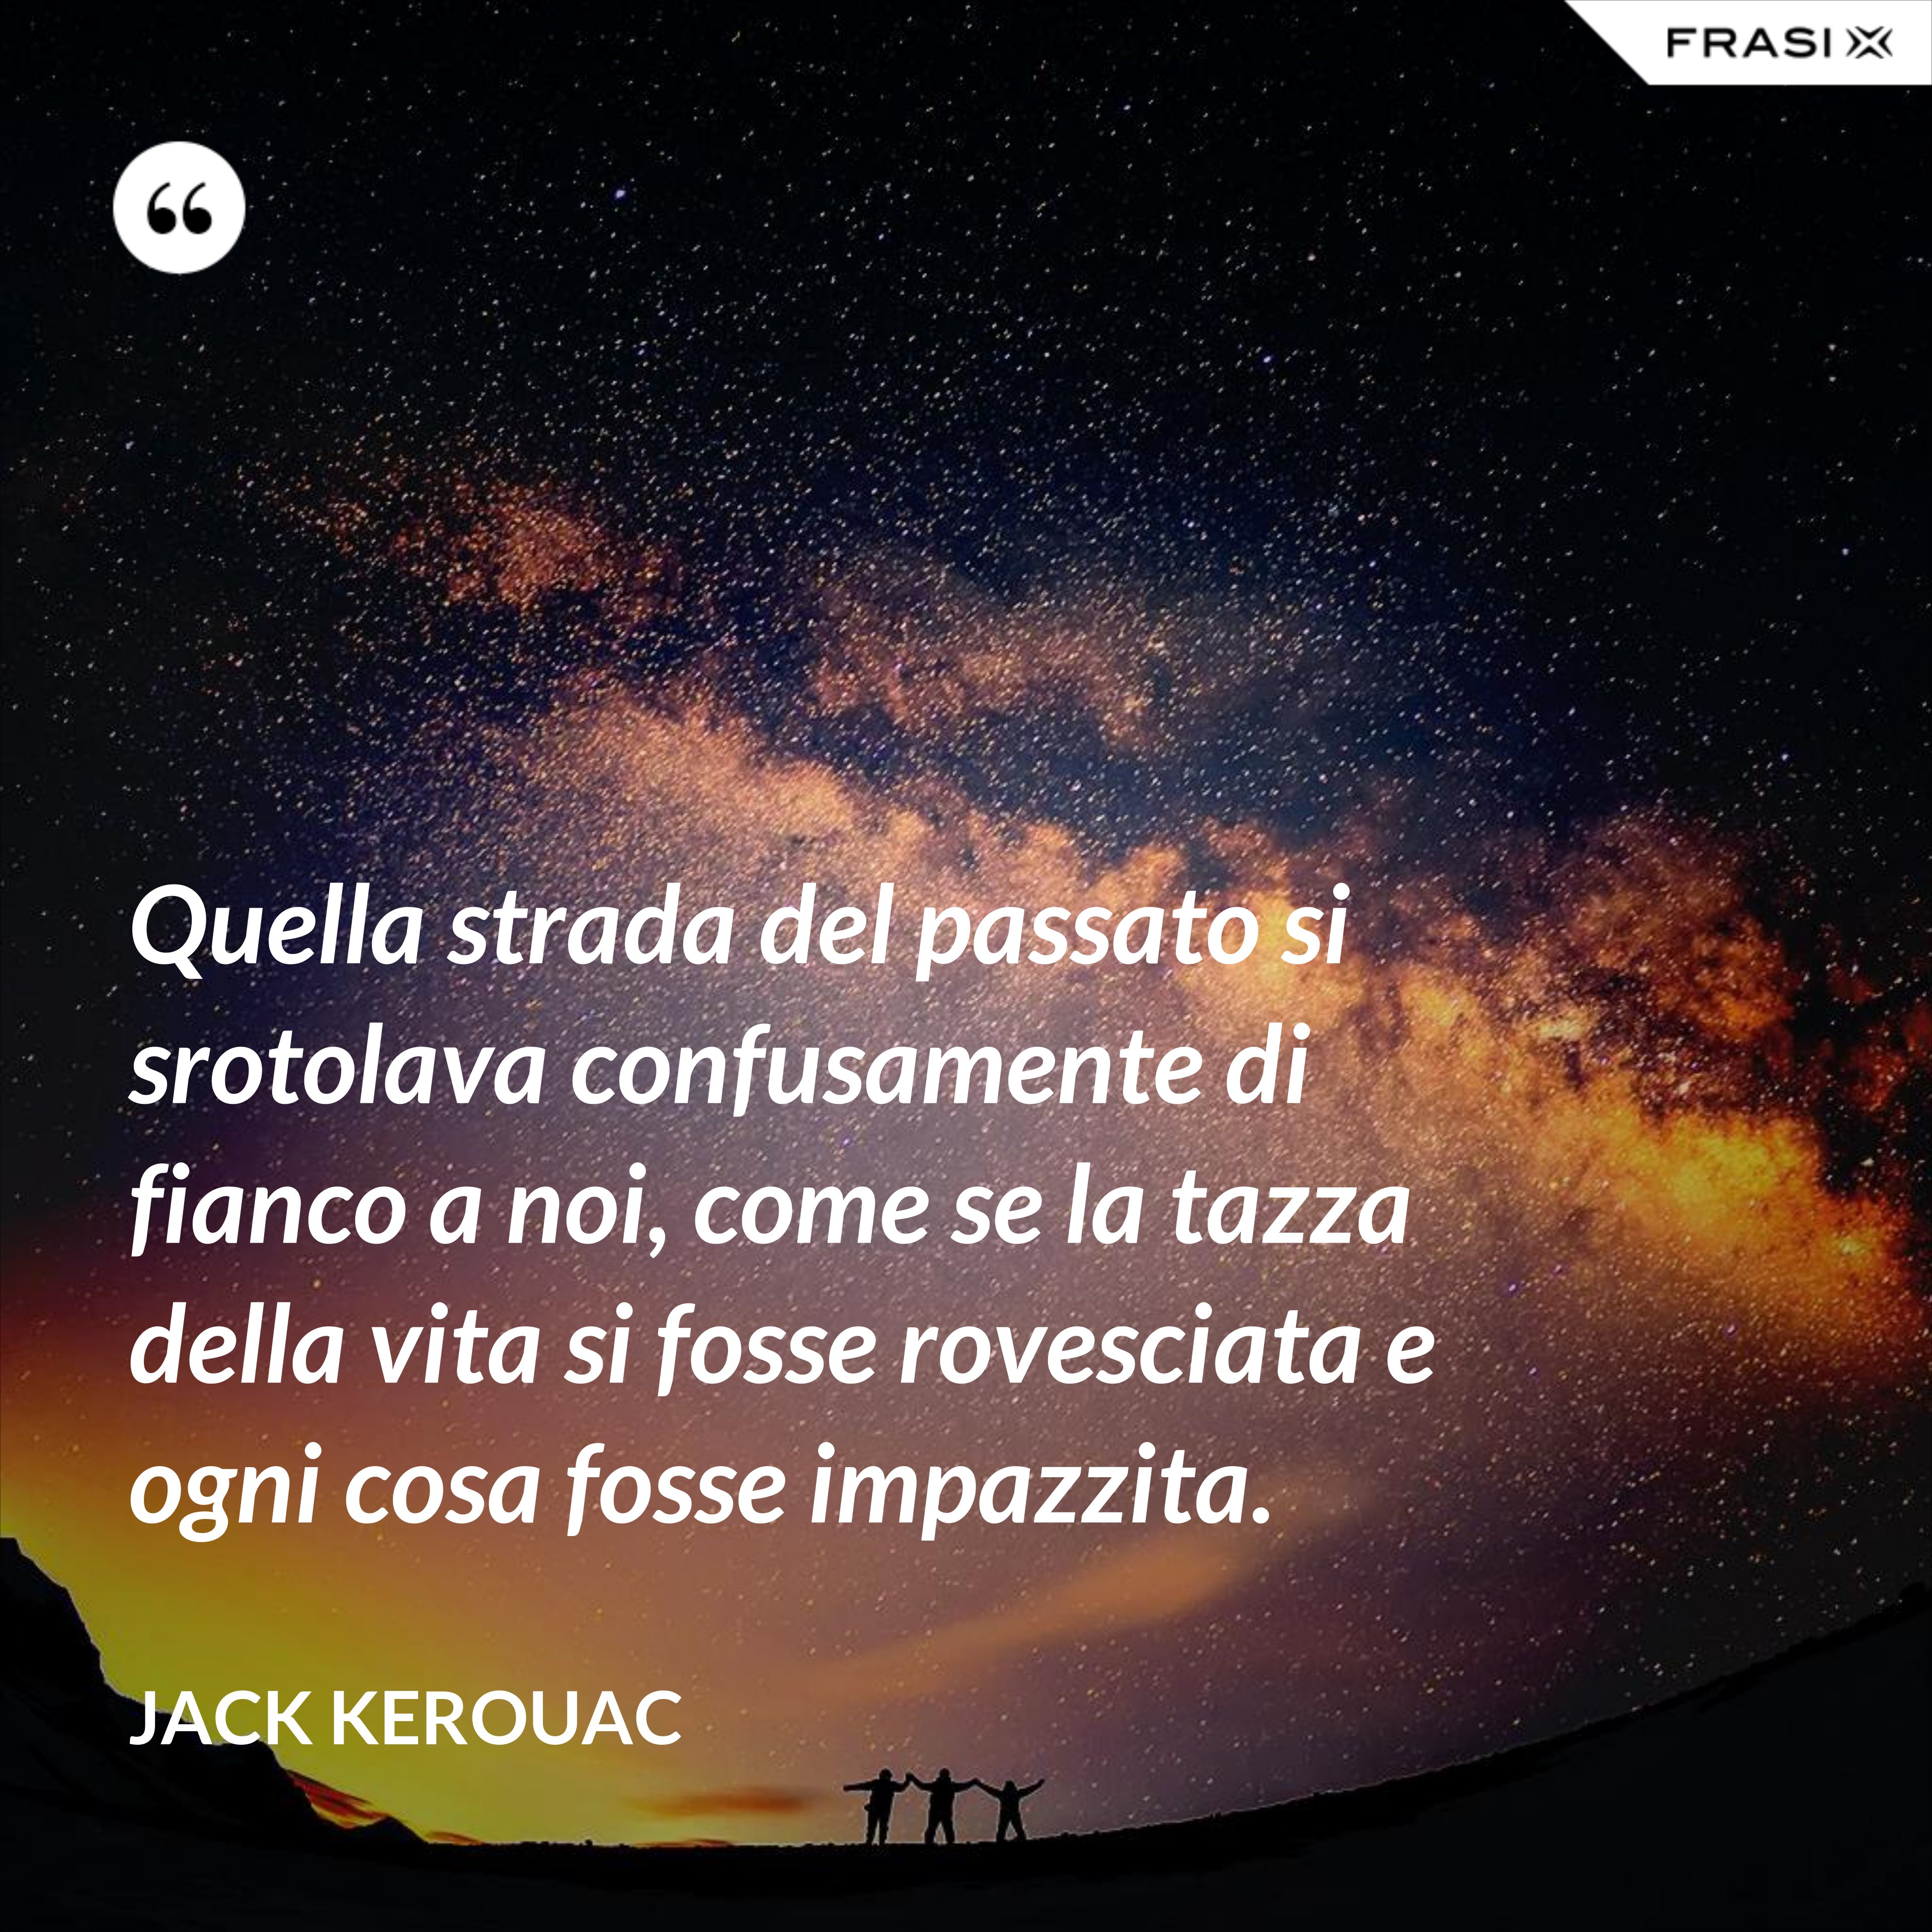 Quella strada del passato si srotolava confusamente di fianco a noi, come se la tazza della vita si fosse rovesciata e ogni cosa fosse impazzita. - Jack Kerouac